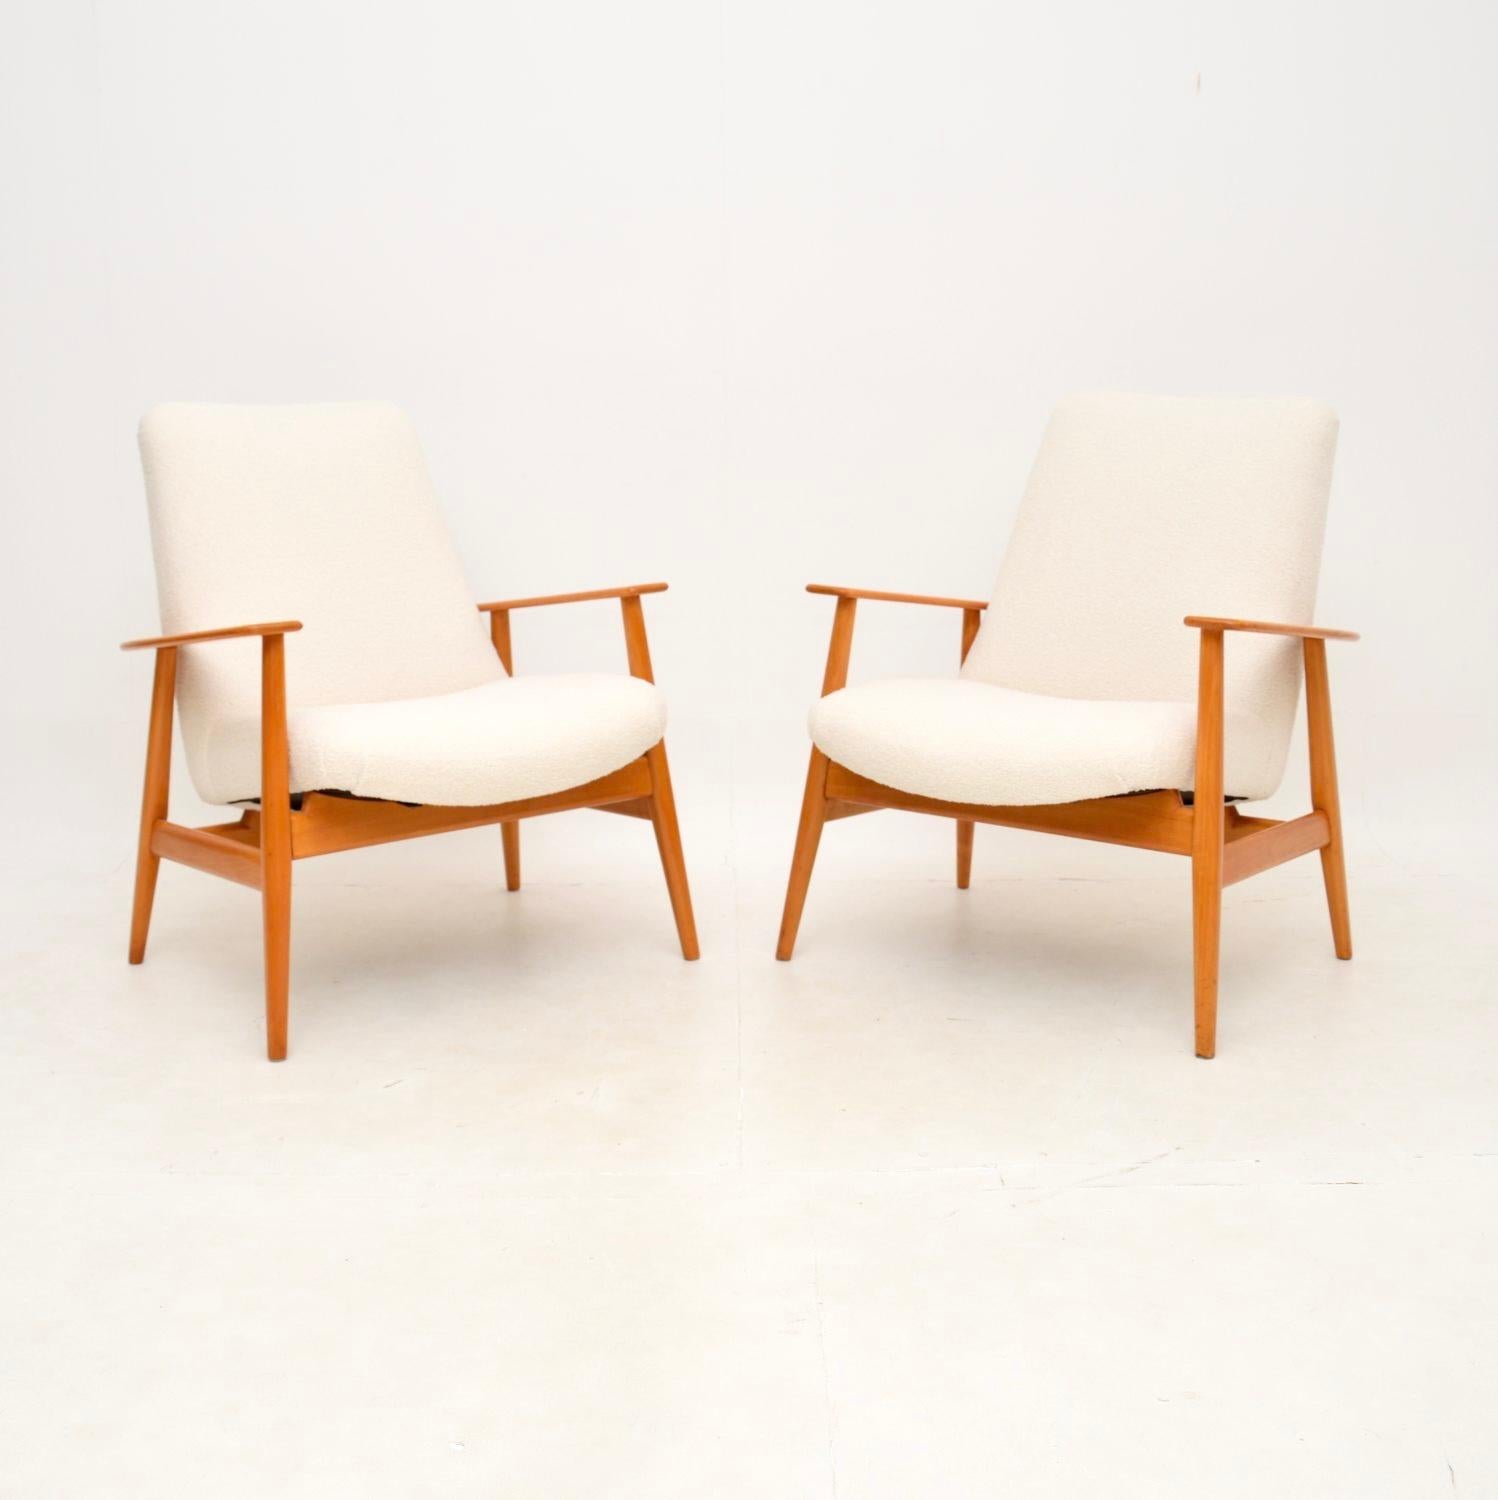 Ein stilvolles und sehr gut gemachtes Paar dänischer Vintage-Sessel aus Kirschbaumholz. Sie wurden kürzlich aus Dänemark importiert und stammen aus den 1950-60er Jahren.

Sie sind von erstaunlicher Qualität und sehr bequem. Sie sehen von allen